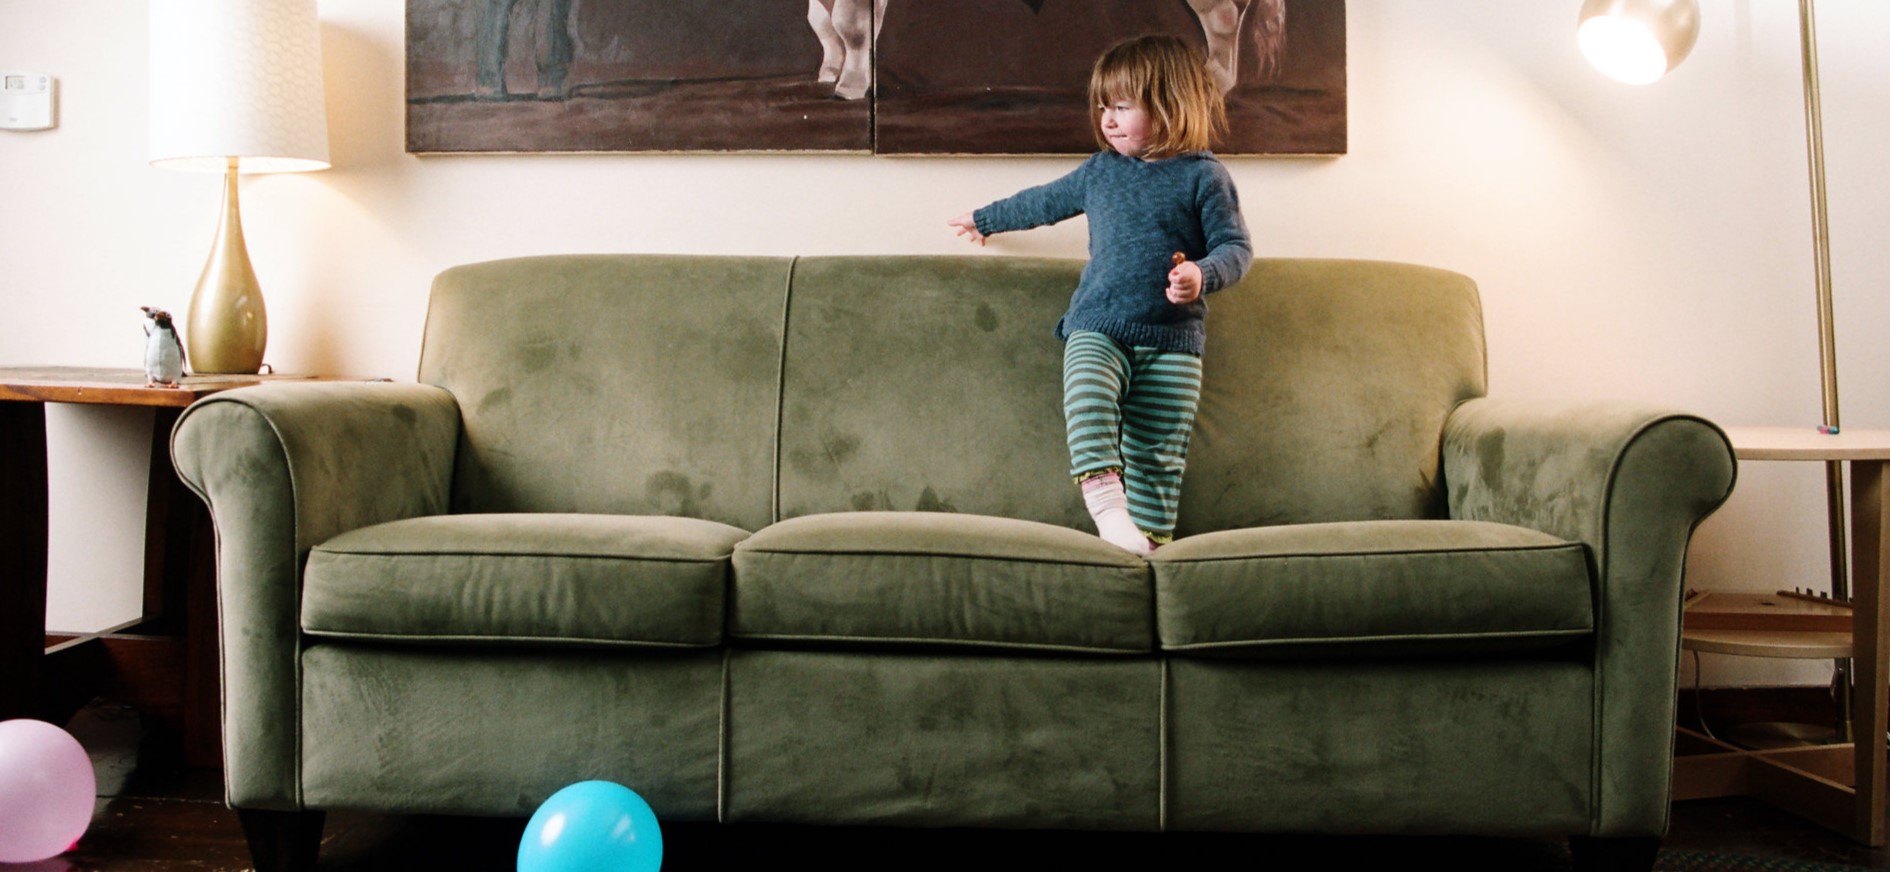 Важно, чтобы мягкая мебель была безопасной для ребенка и не содержала в свой конструкции острые углы